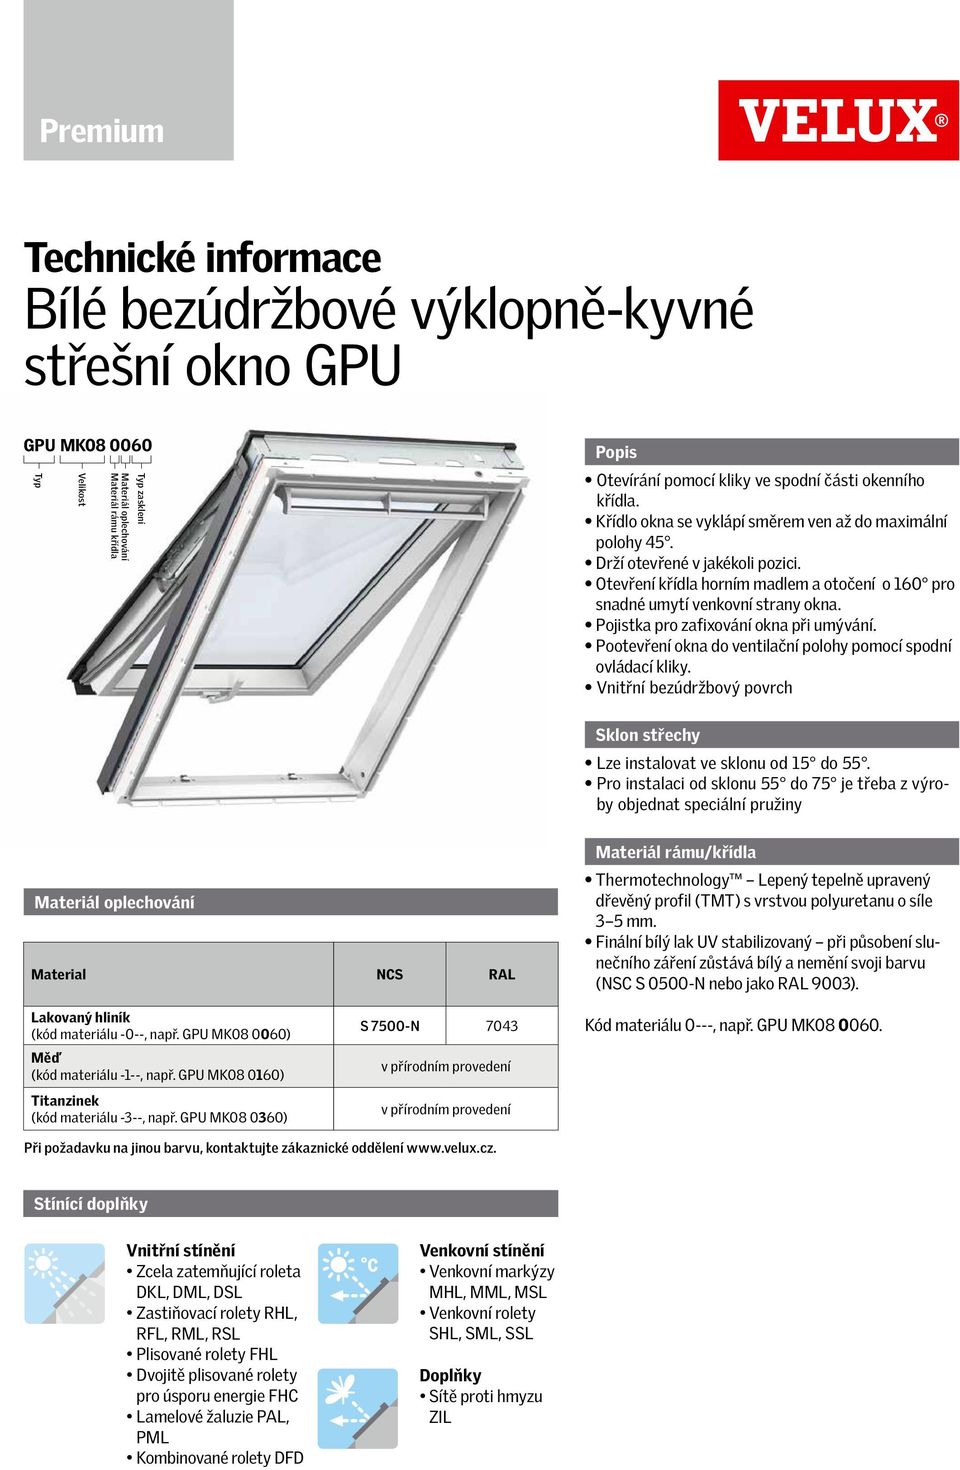 Pojistka pro zafixování okna při umývání. Pootevření okna do ventilační polohy pomocí spodní ovládací kliky. Vnitřní bezúdržbový povrch Sklon střechy Lze instalovat ve sklonu od 15 do 55.